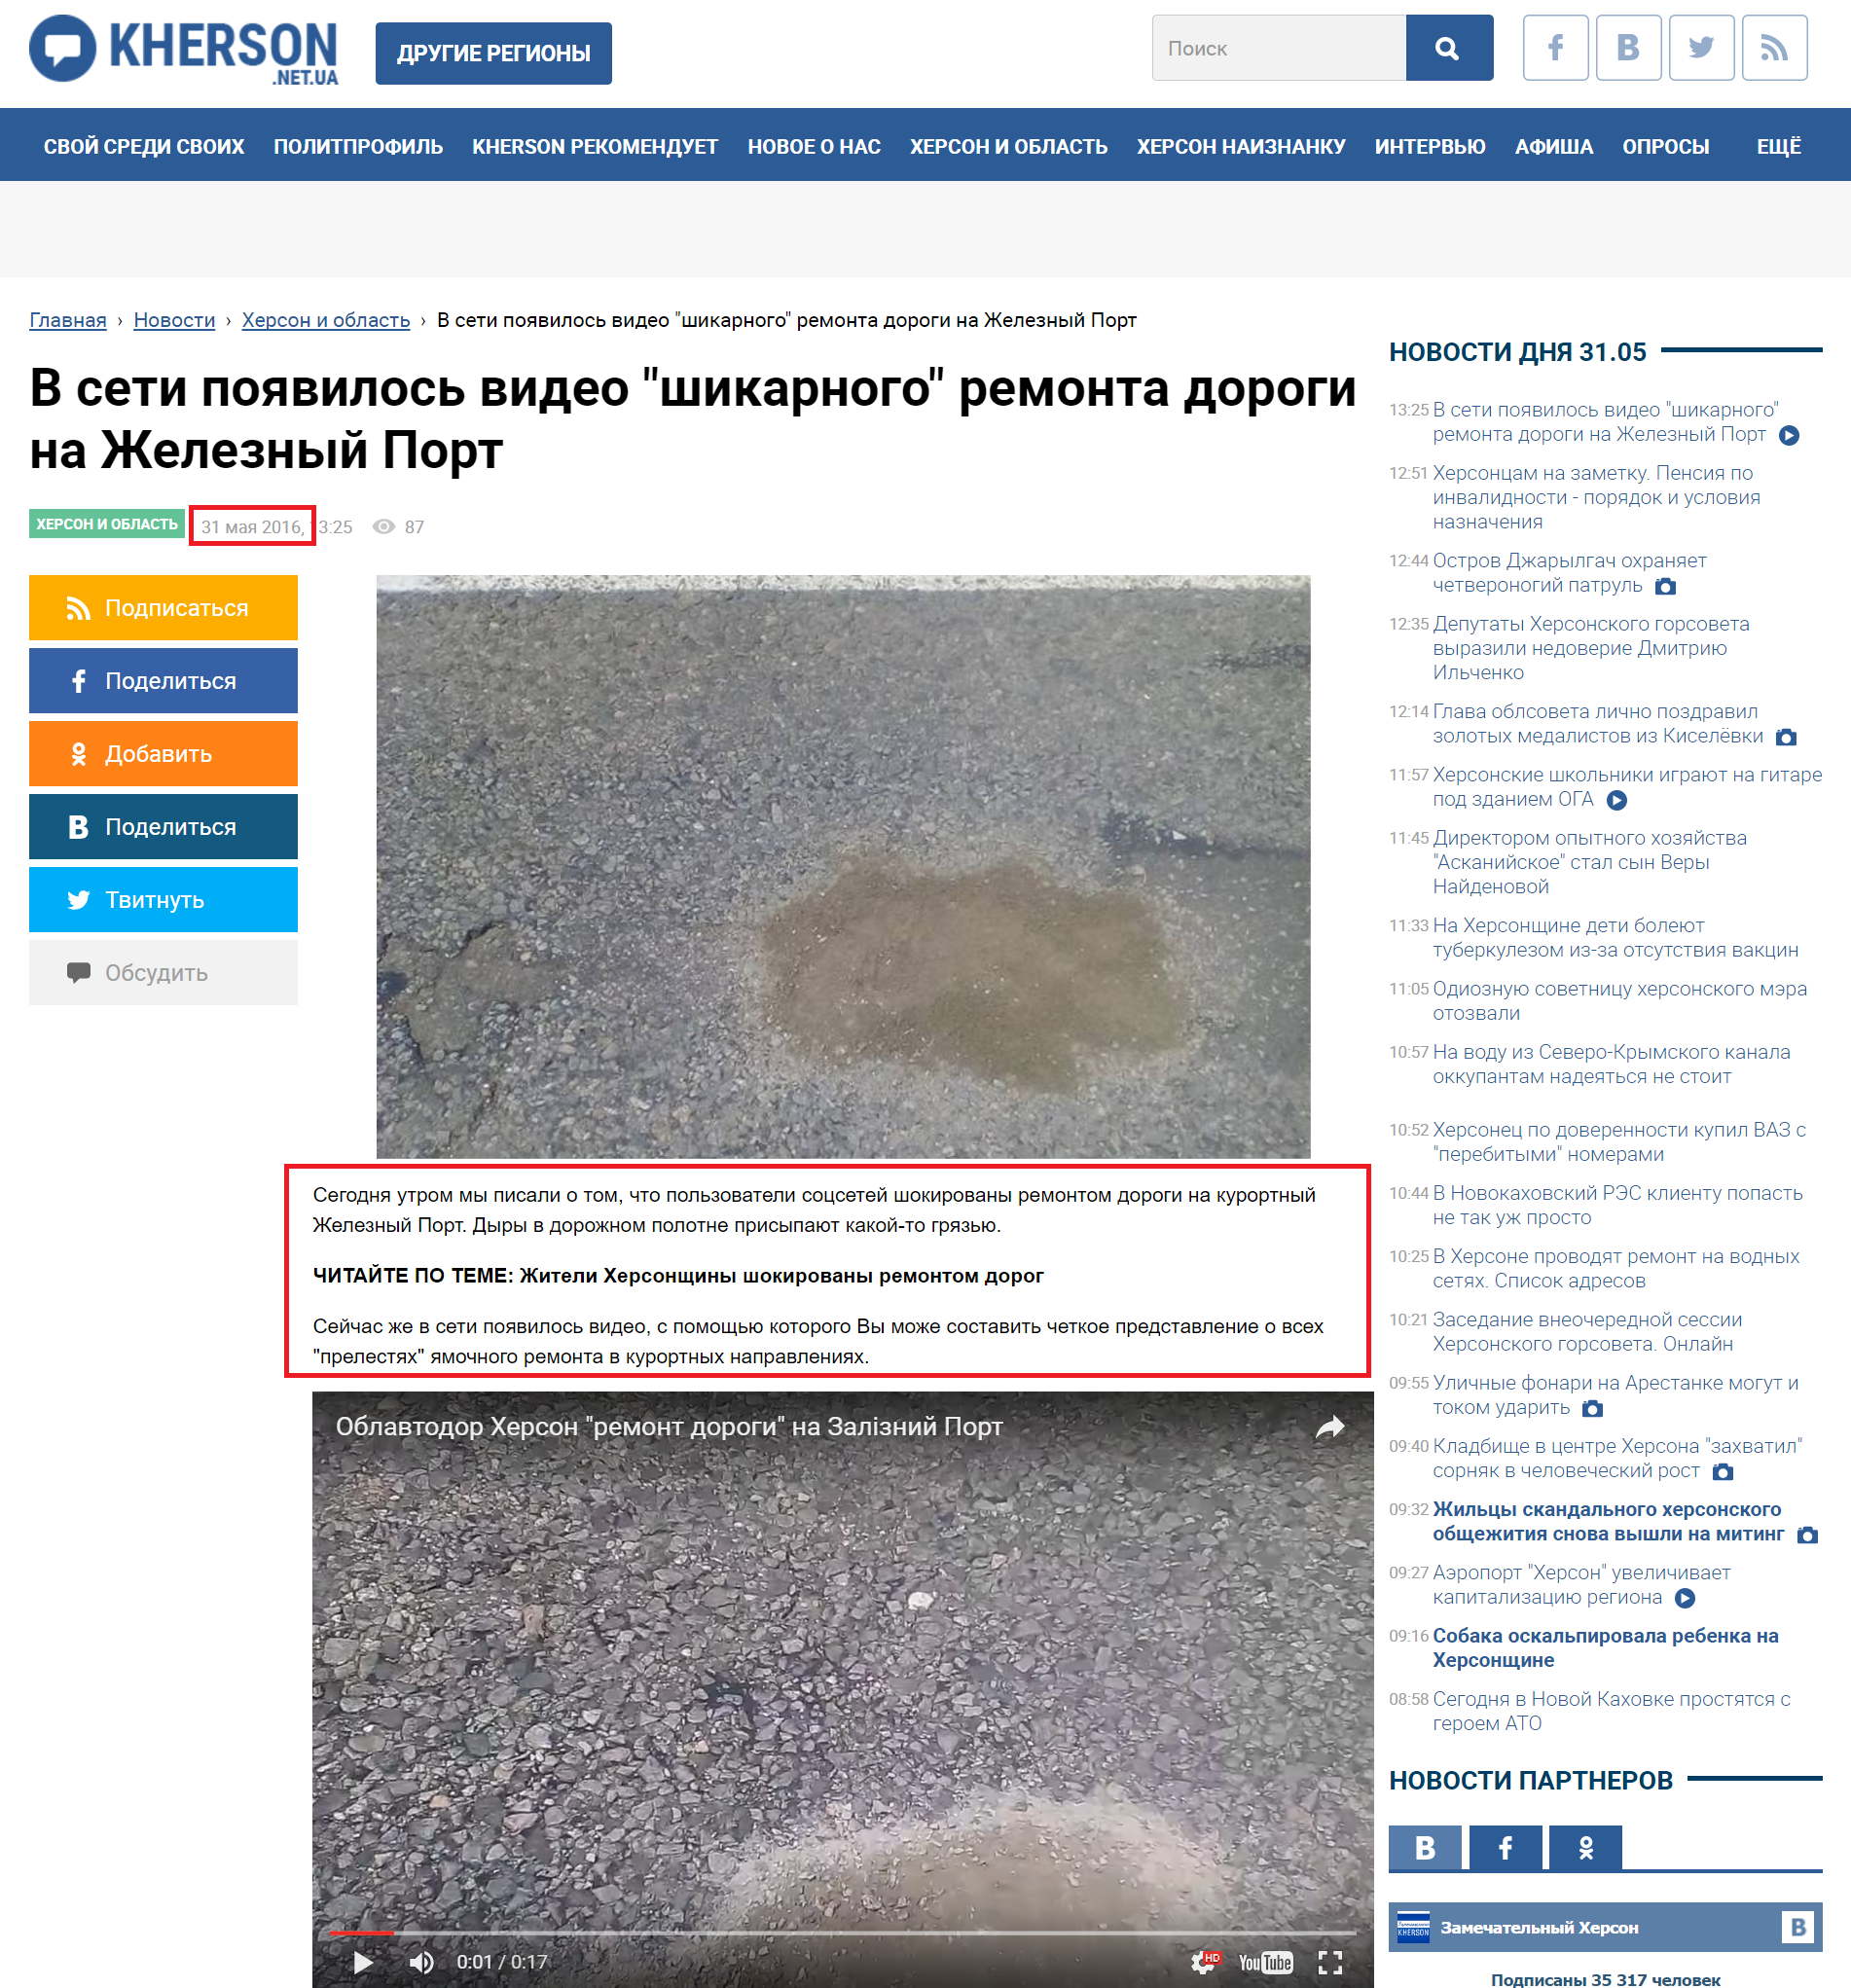 http://kherson.net.ua/news/v-seti-pojavilos-video-shikarnogo-remonta-dorogi-na-zheleznyj-port